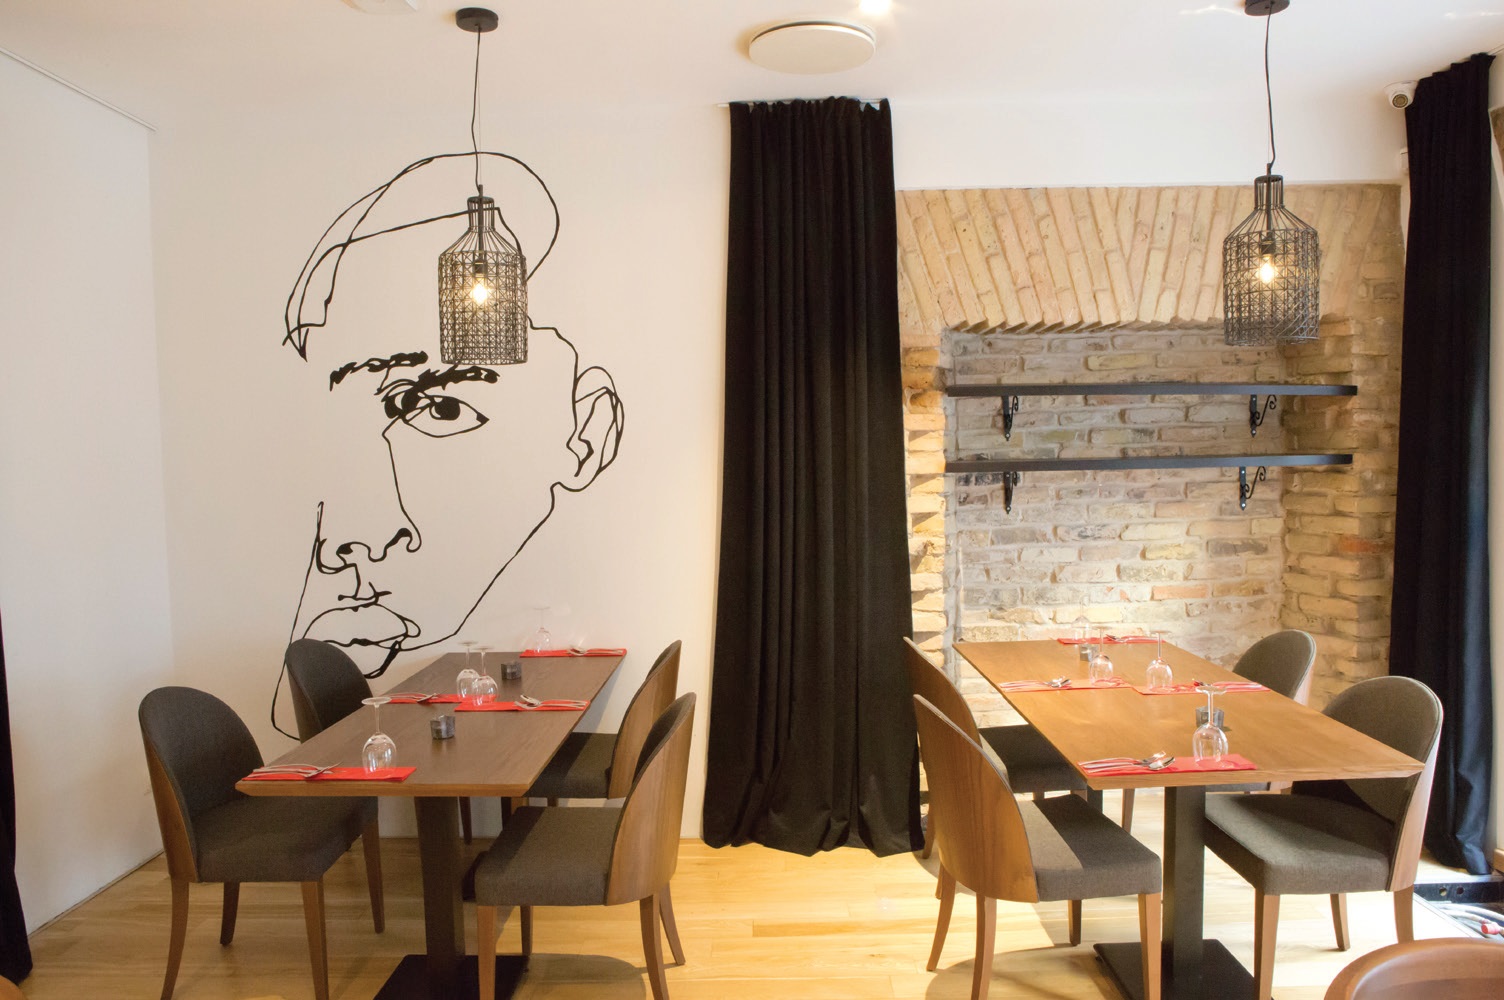 Nuosaikų restorano interjerą pagyvina išskirtinės detalės – kaip ir šis piešinys ant sienos